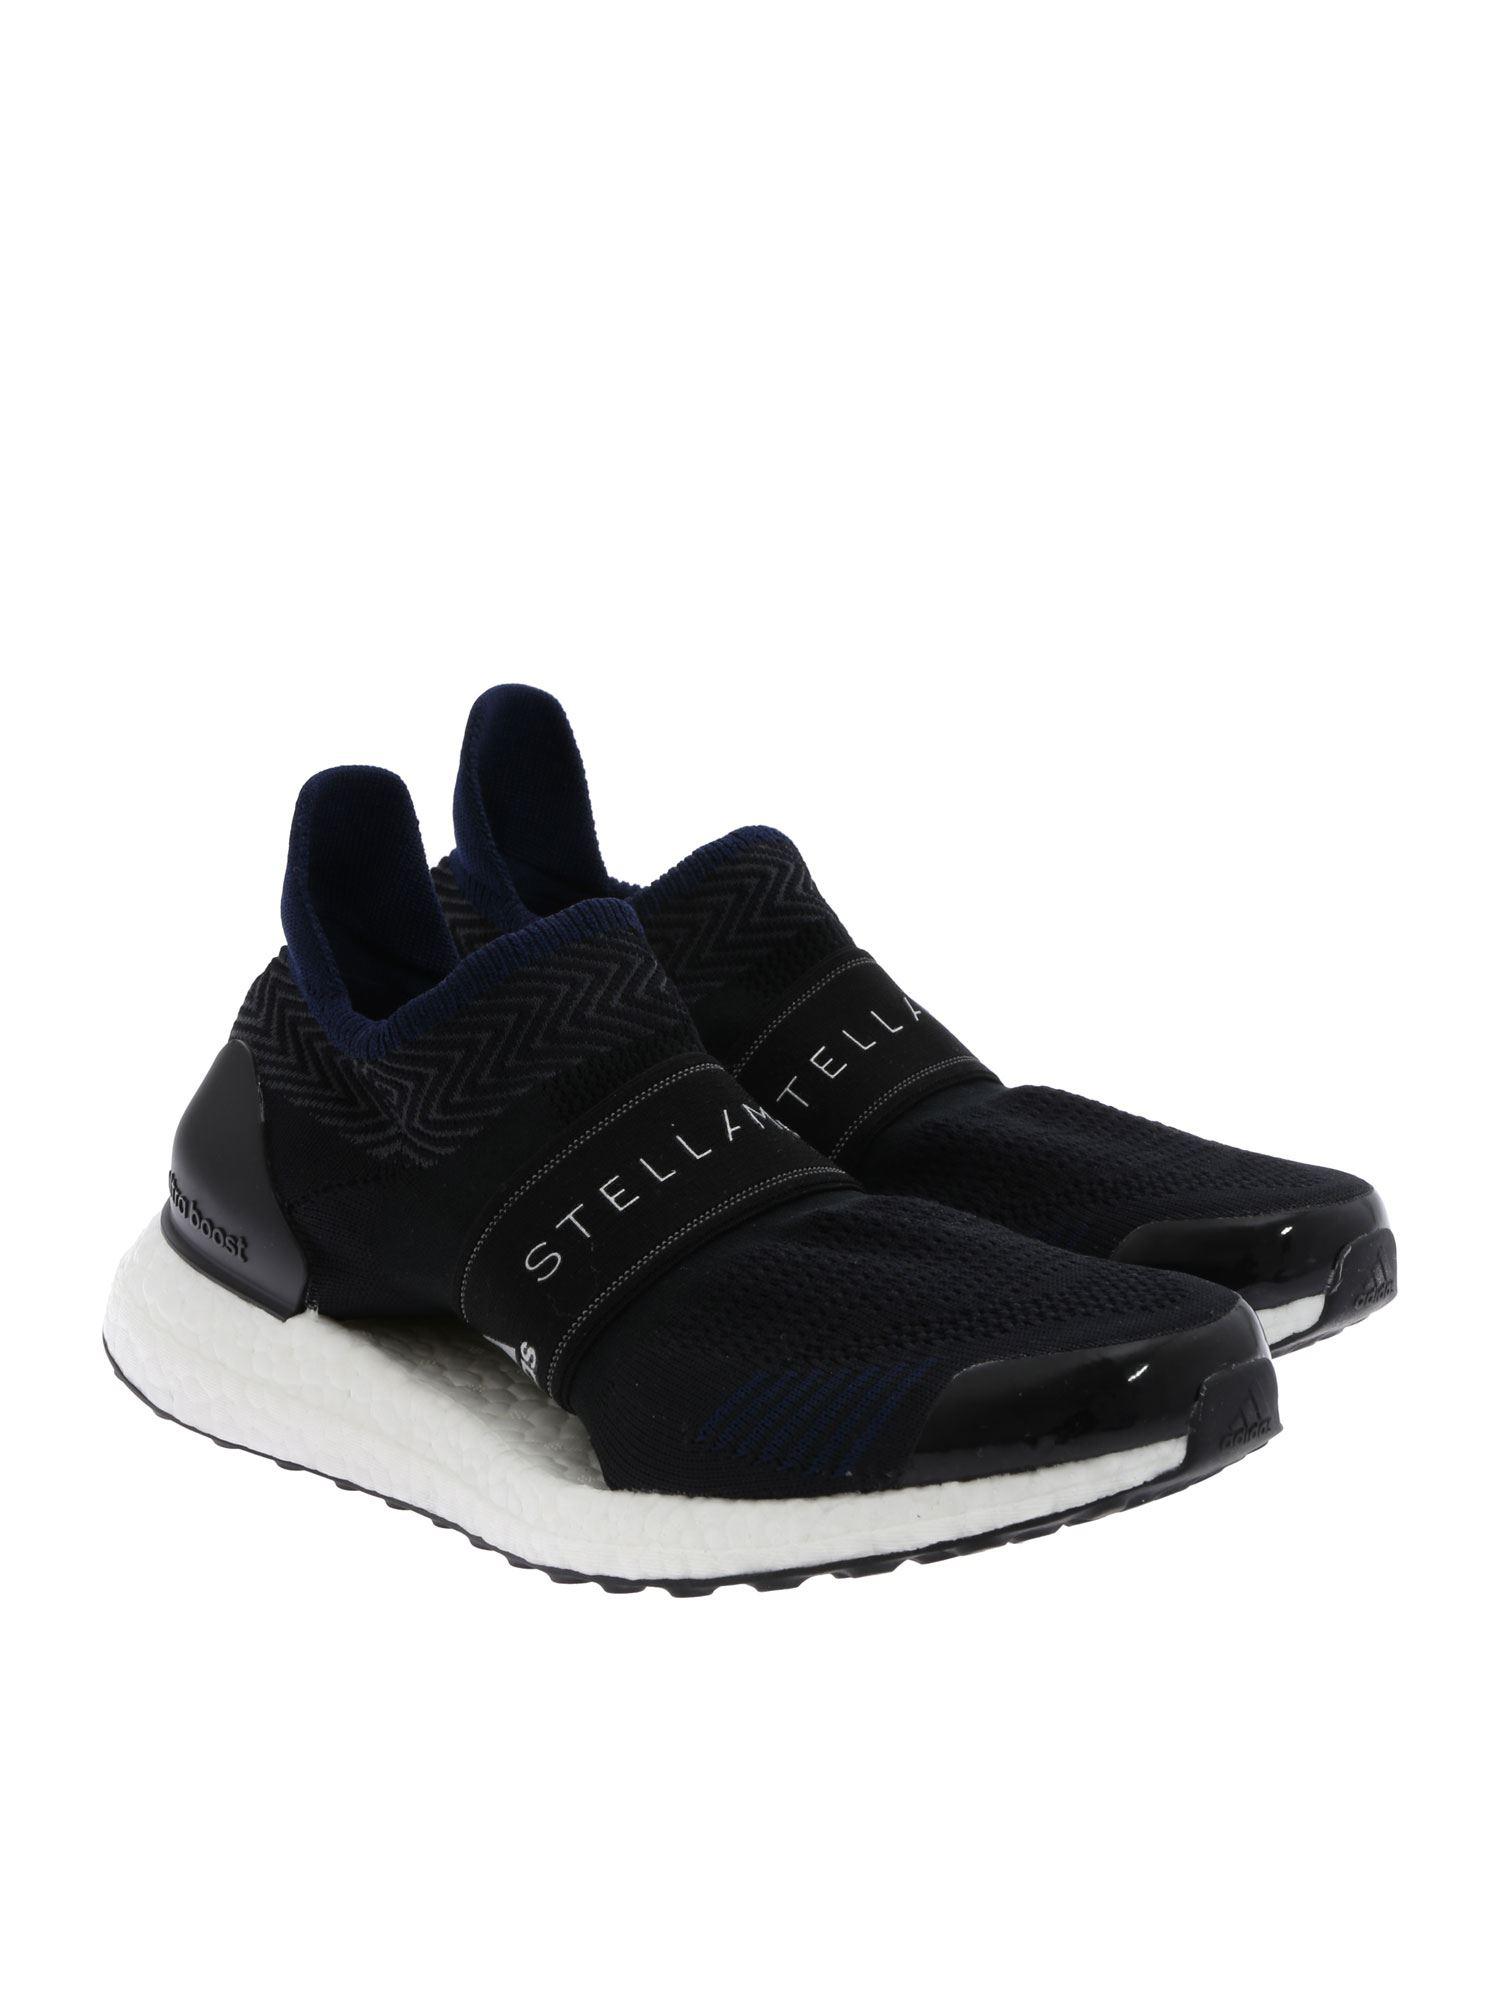 Adidas By Stella Mccartney Rubber Ultraboost X 3d Sneakers In Black Lyst